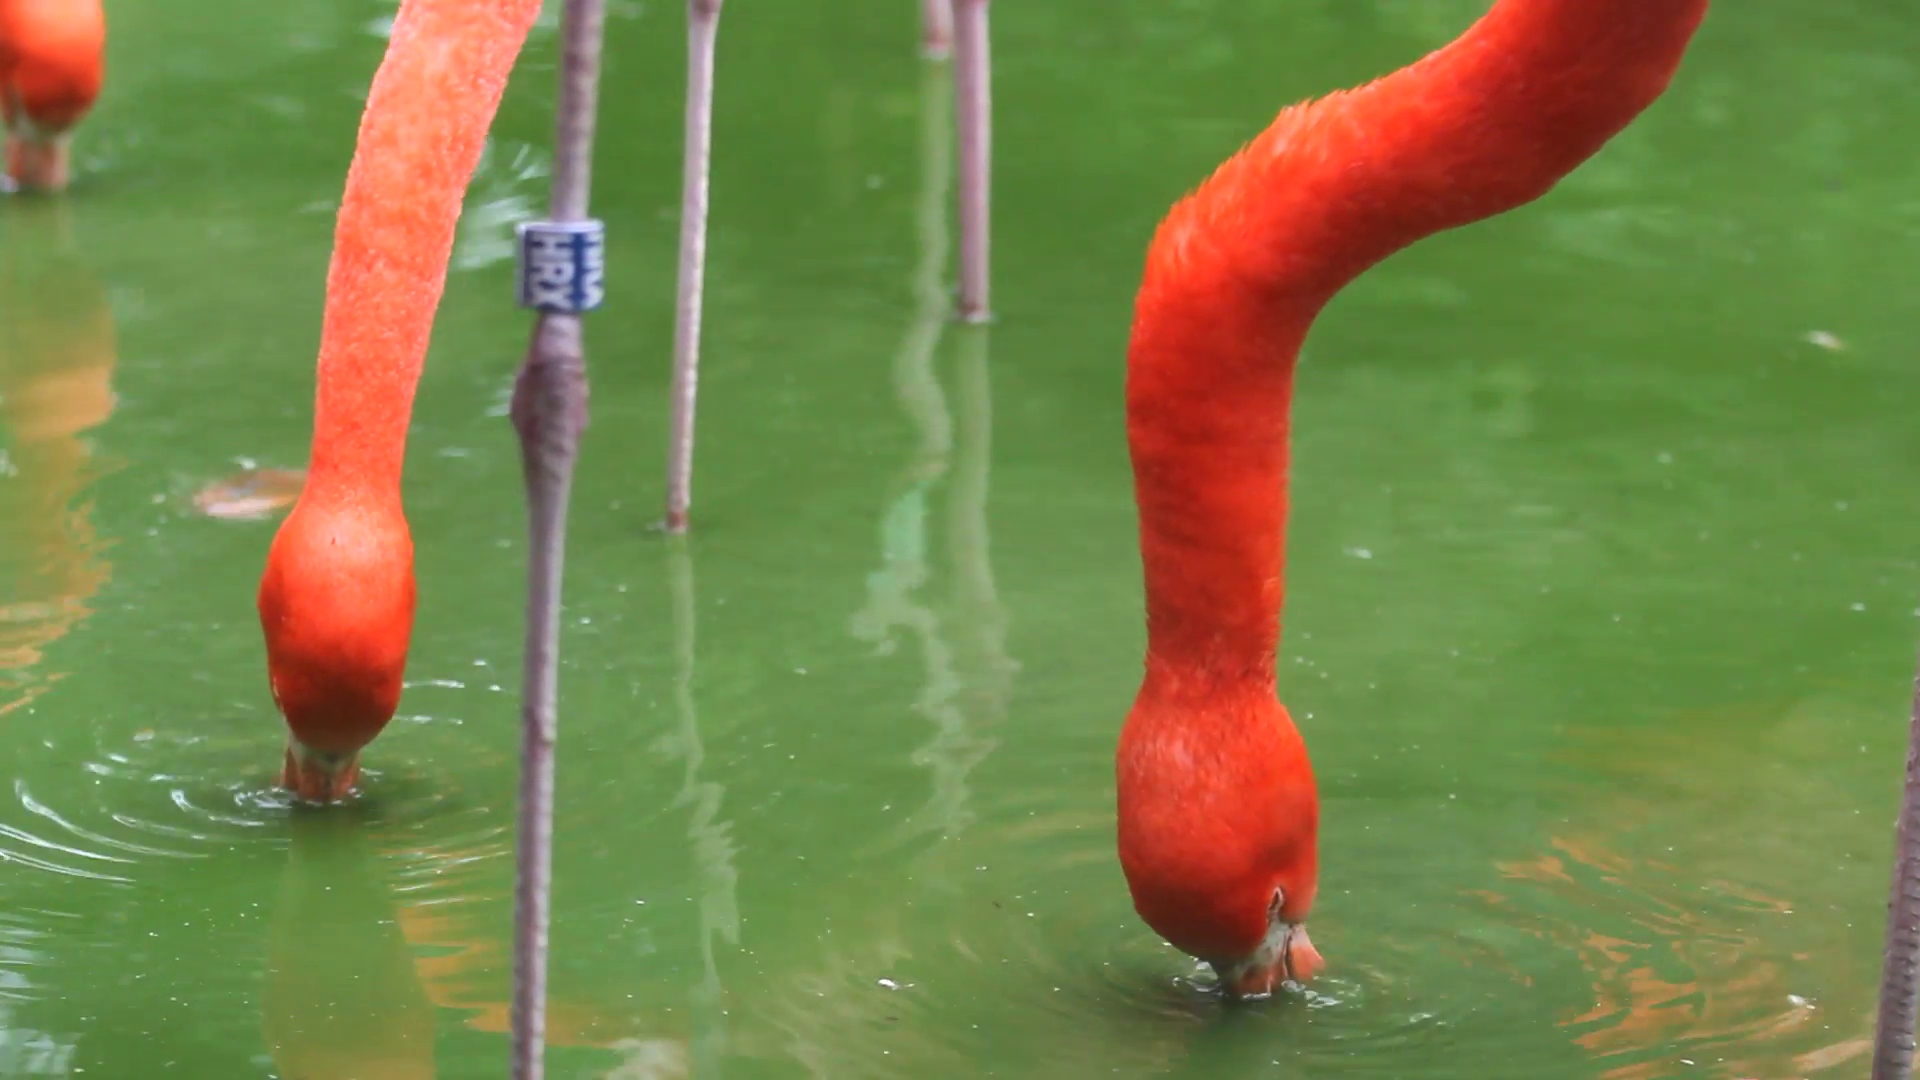 Red flamingo photo